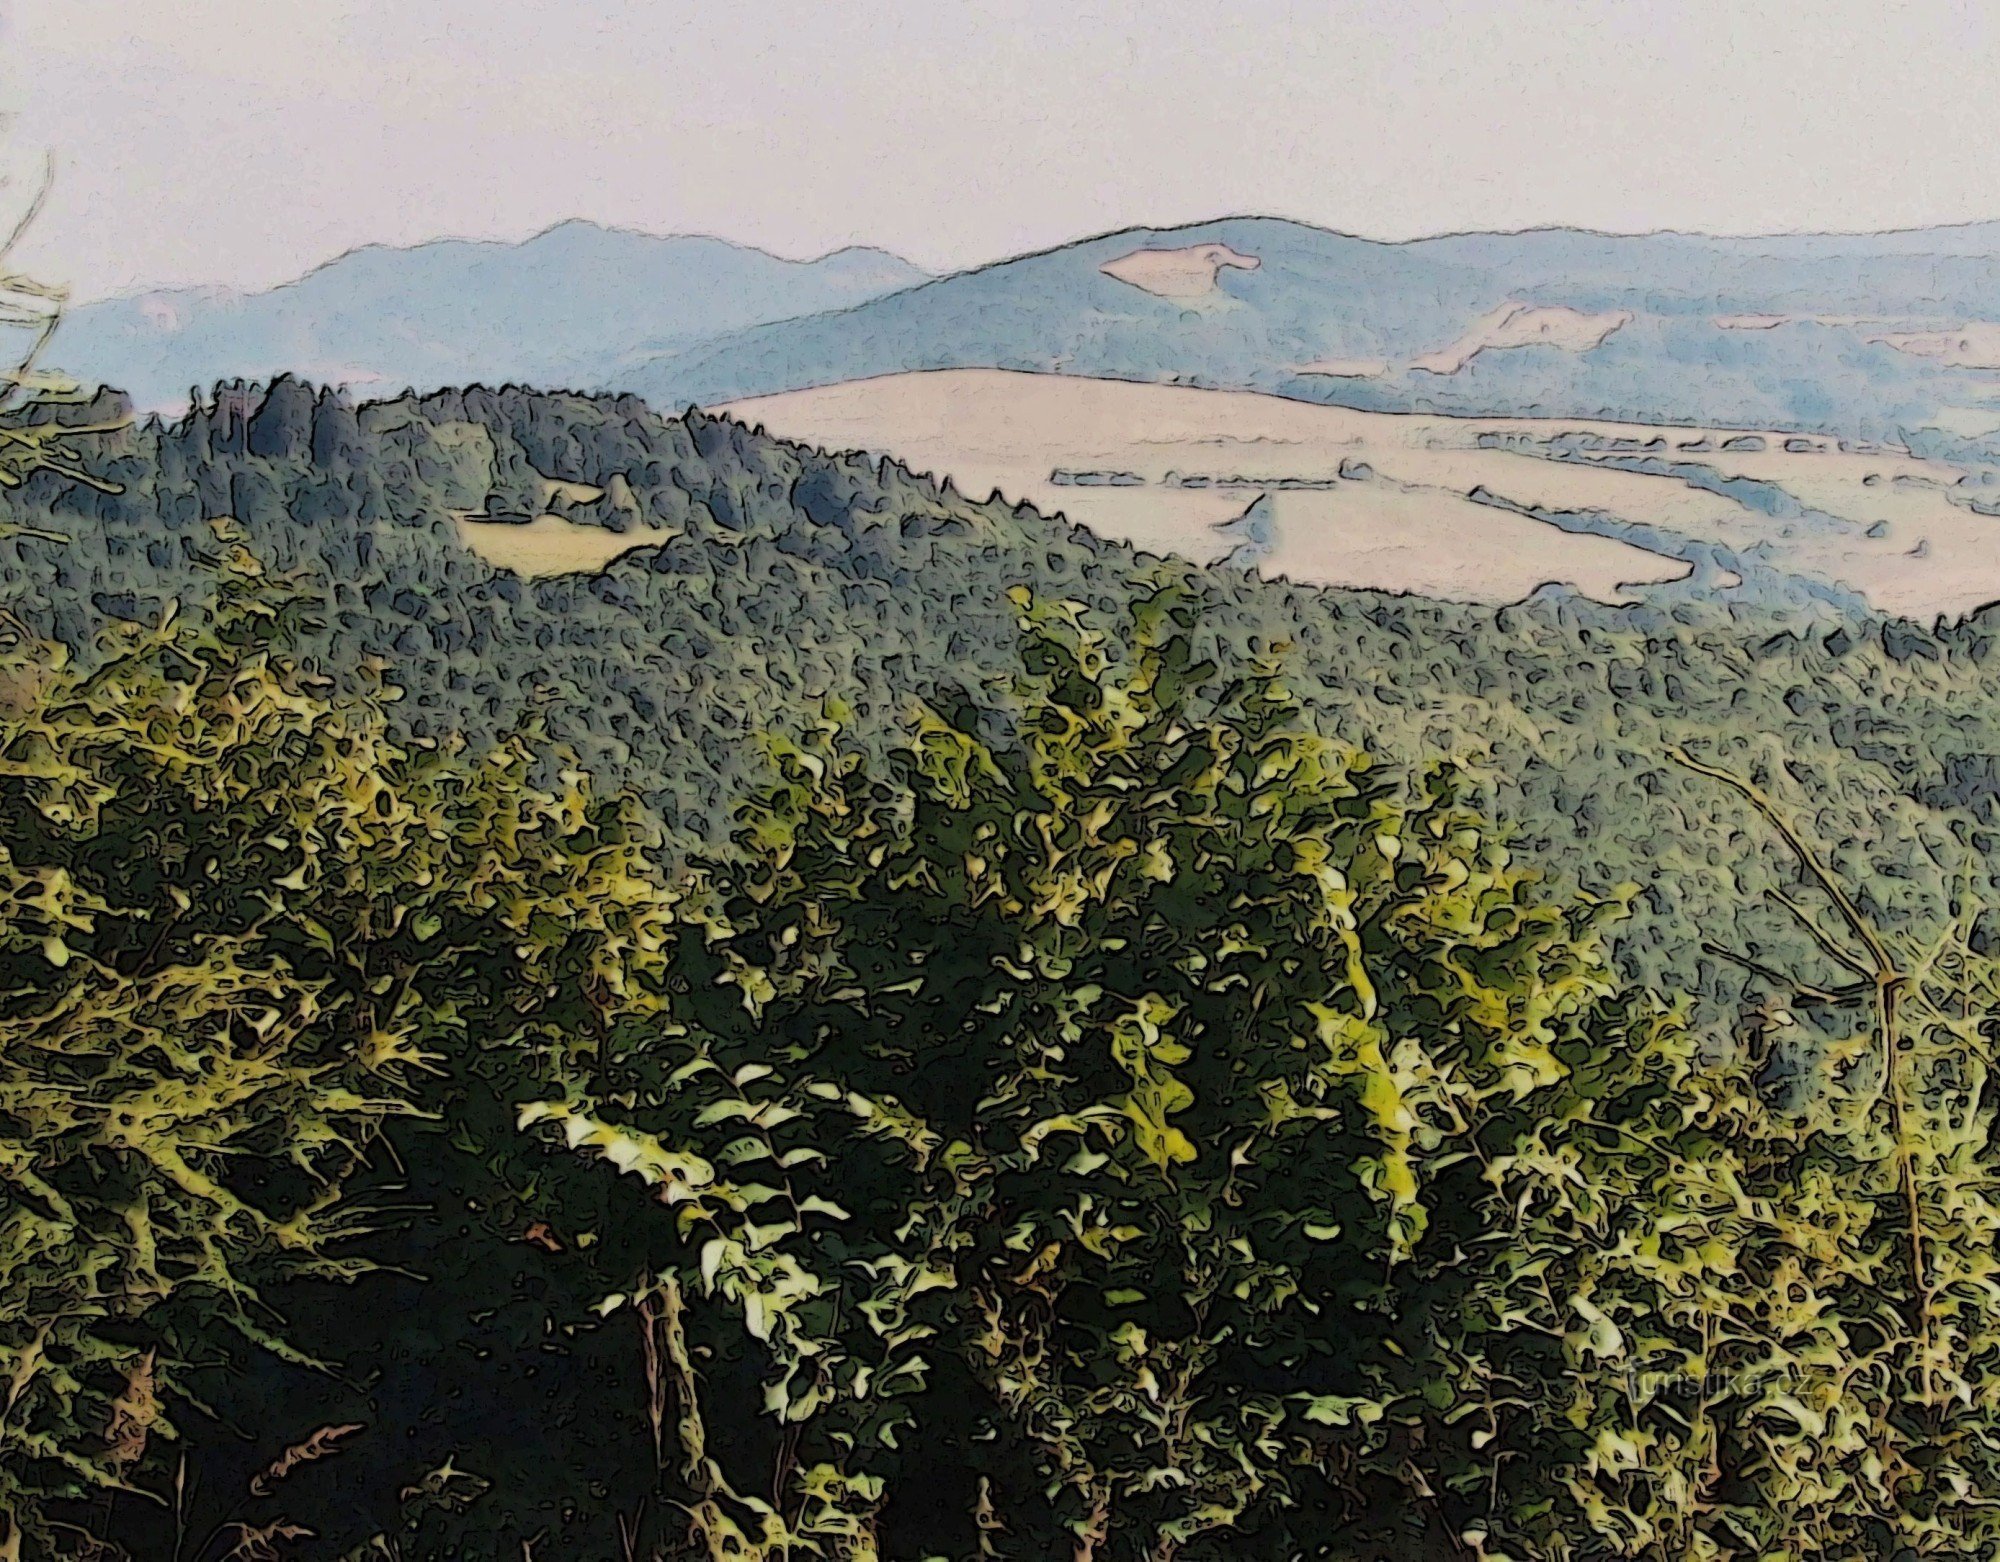 Miradouro natural de Plošciny (738 m)